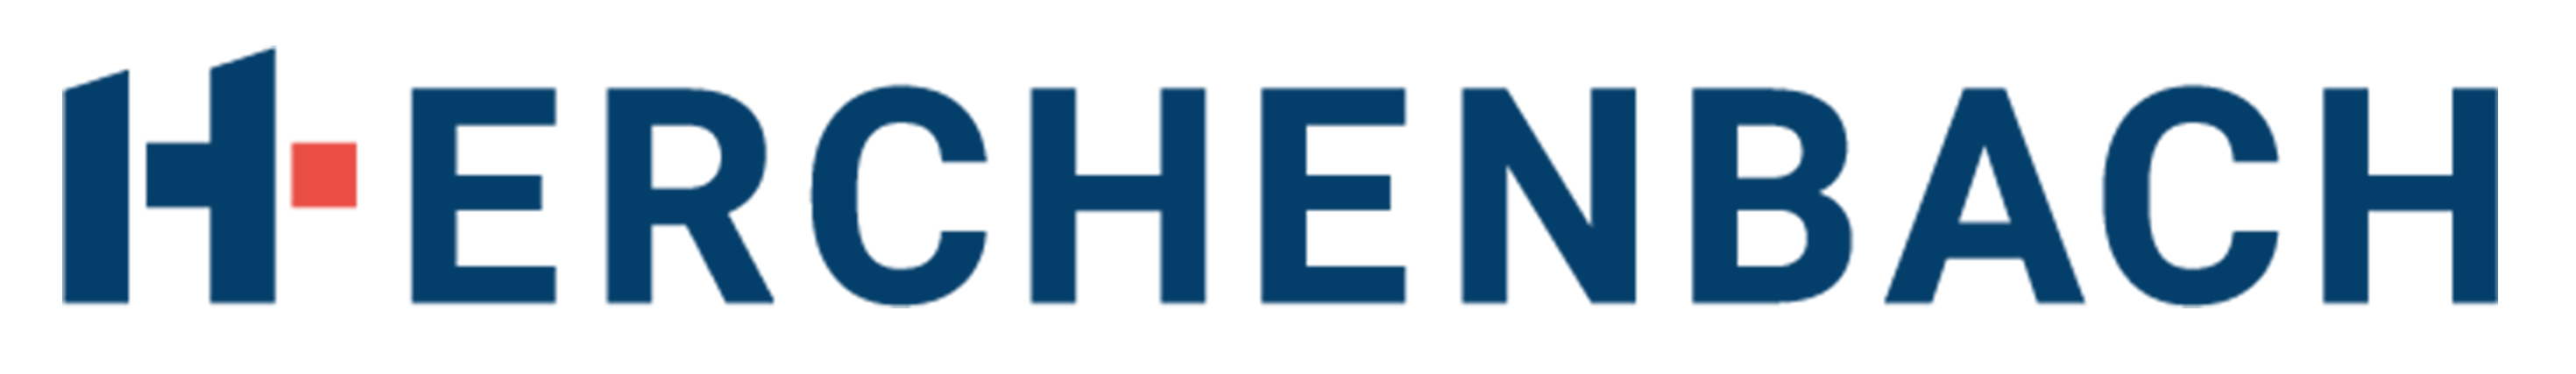 Heb logo horizontal rgb